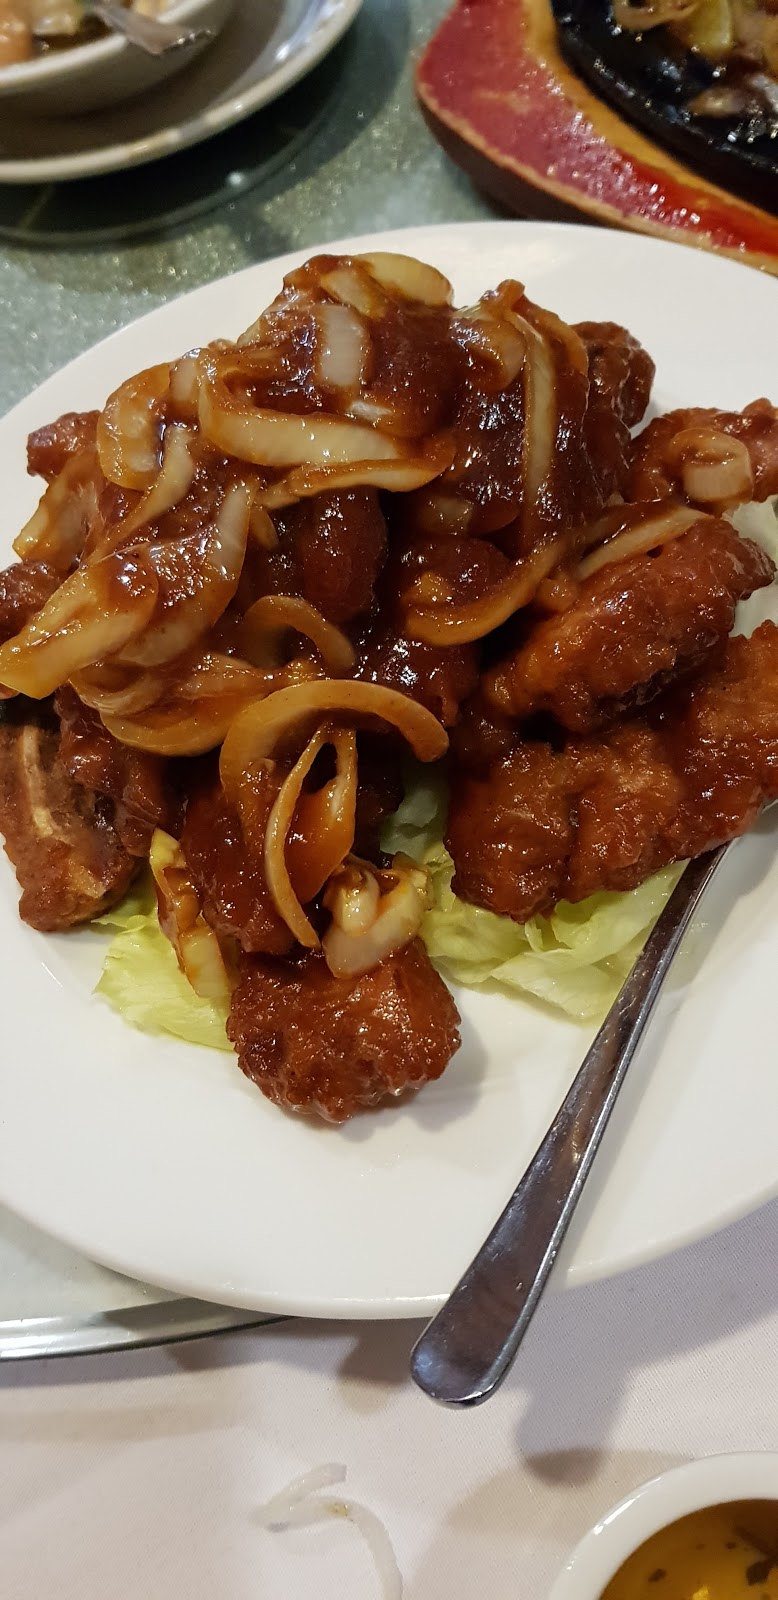 Yumsing Chinese Restaurant & Take Away Food | Langford WA 6147, Australia | Phone: (08) 9451 5538